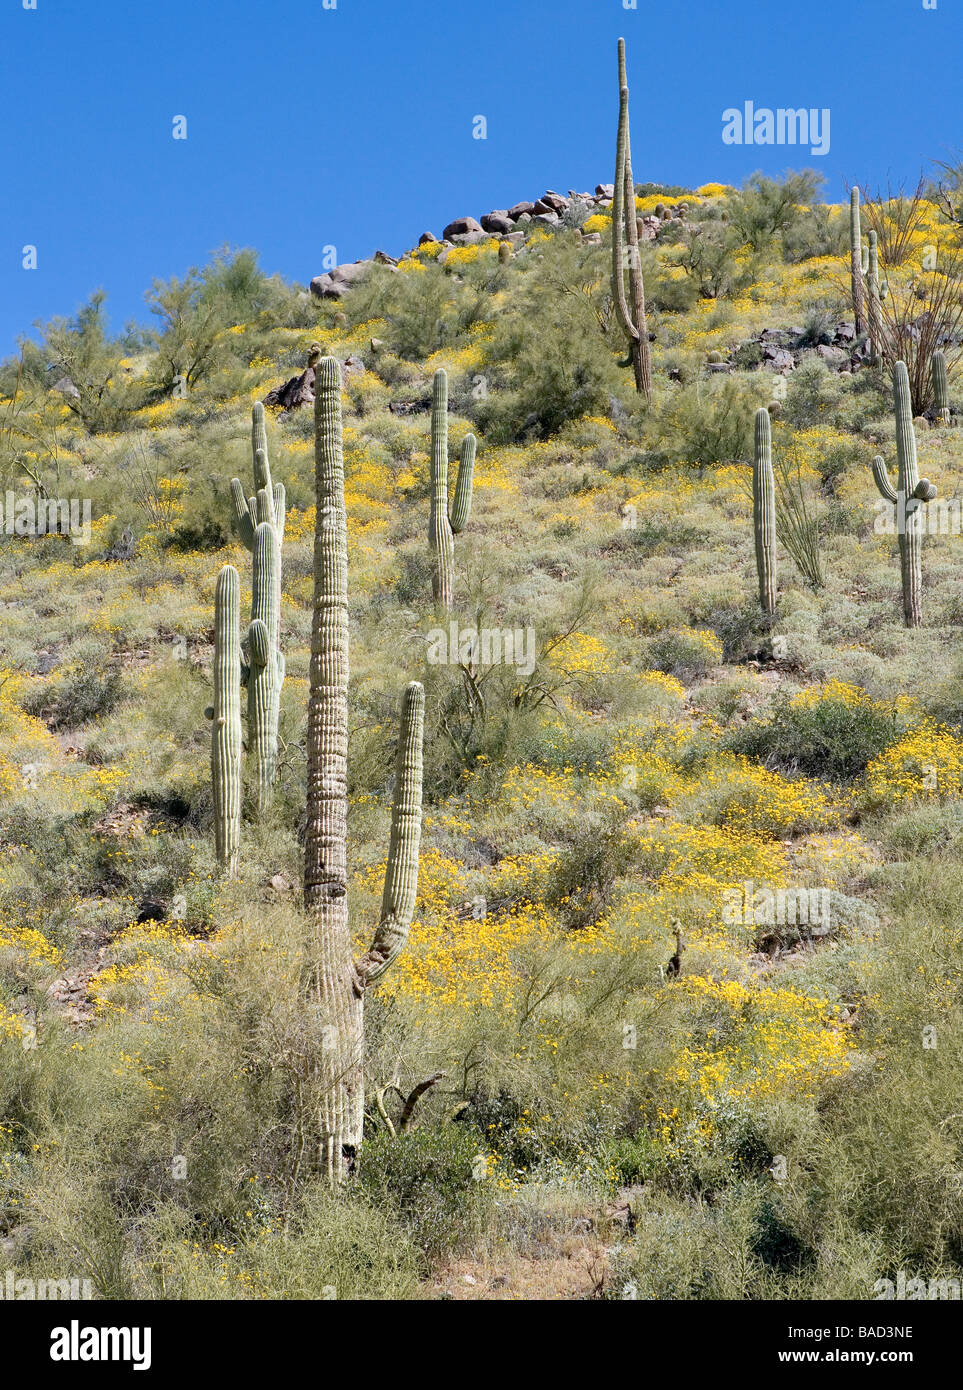 Encilia Farinosa spröde Bush ist ein Mitglied der Sonnenblume-Familie, die diese in der Nähe ein Saguaro-Kaktus in Arizona blühten Stockfoto